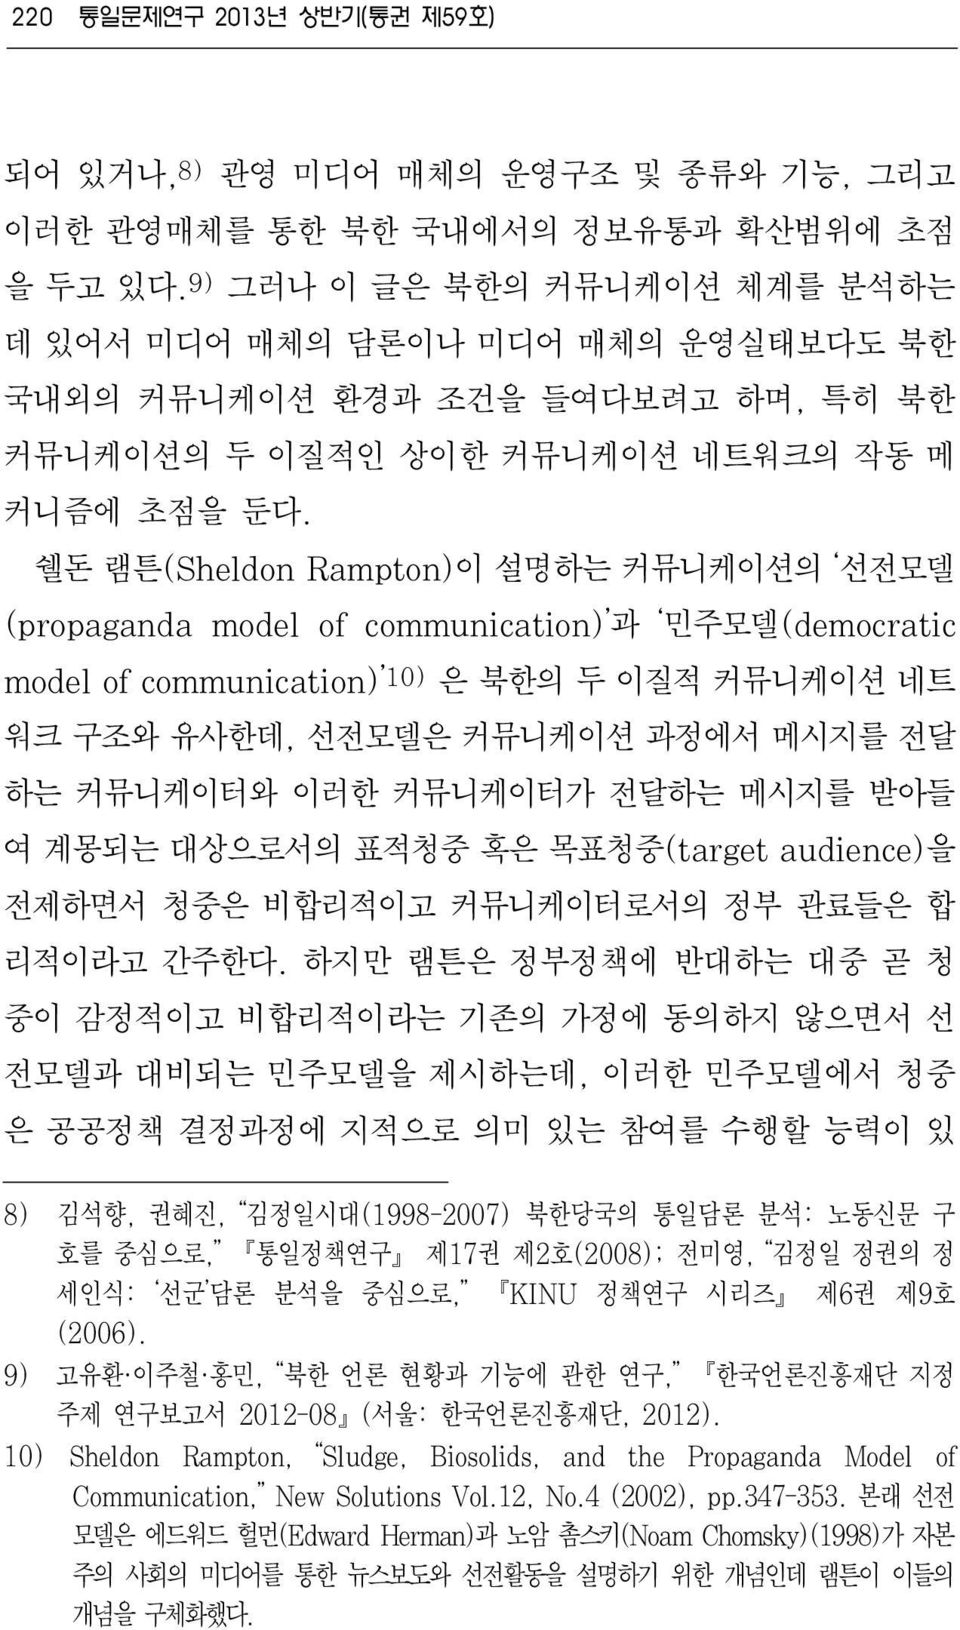 쉘돈 램튼(Sheldon Rampton)이 설명하는 커뮤니케이션의 선전모델 (propaganda model of communication) 과 민주모델(democratic model of communication) 10) 은 북한의 두 이질적 커뮤니케이션 네트 워크 구조와 유사한데, 선전모델은 커뮤니케이션 과정에서 메시지를 전달 하는 커뮤니케이터와 이러한